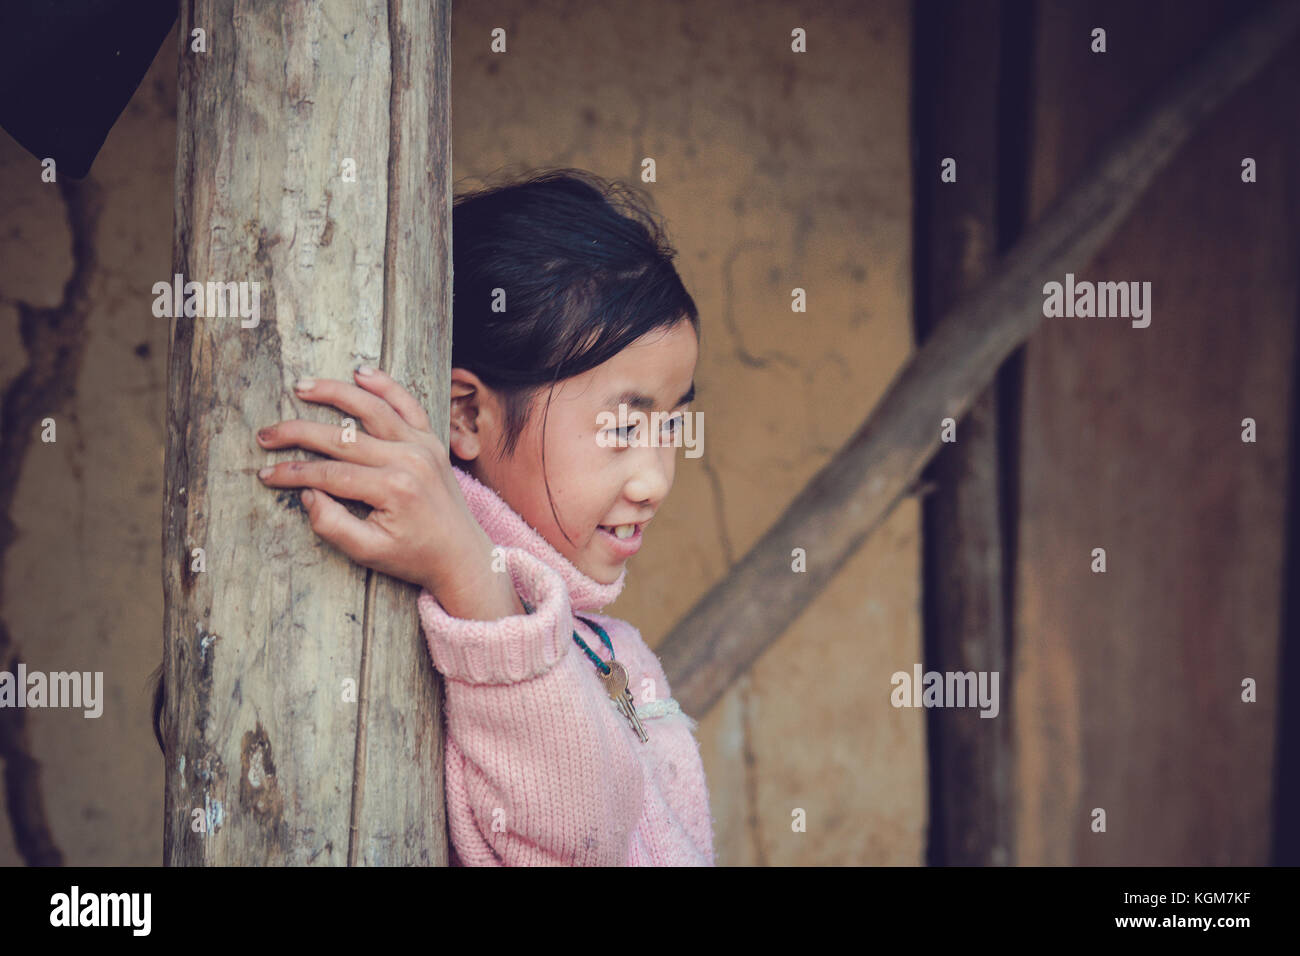 Ngai thau village, province de Lao Cai, Vietnam - 06 novembre 2015 : les enfants de minorités ethniques jouant dans ngai thau village, province de cao lao Banque D'Images